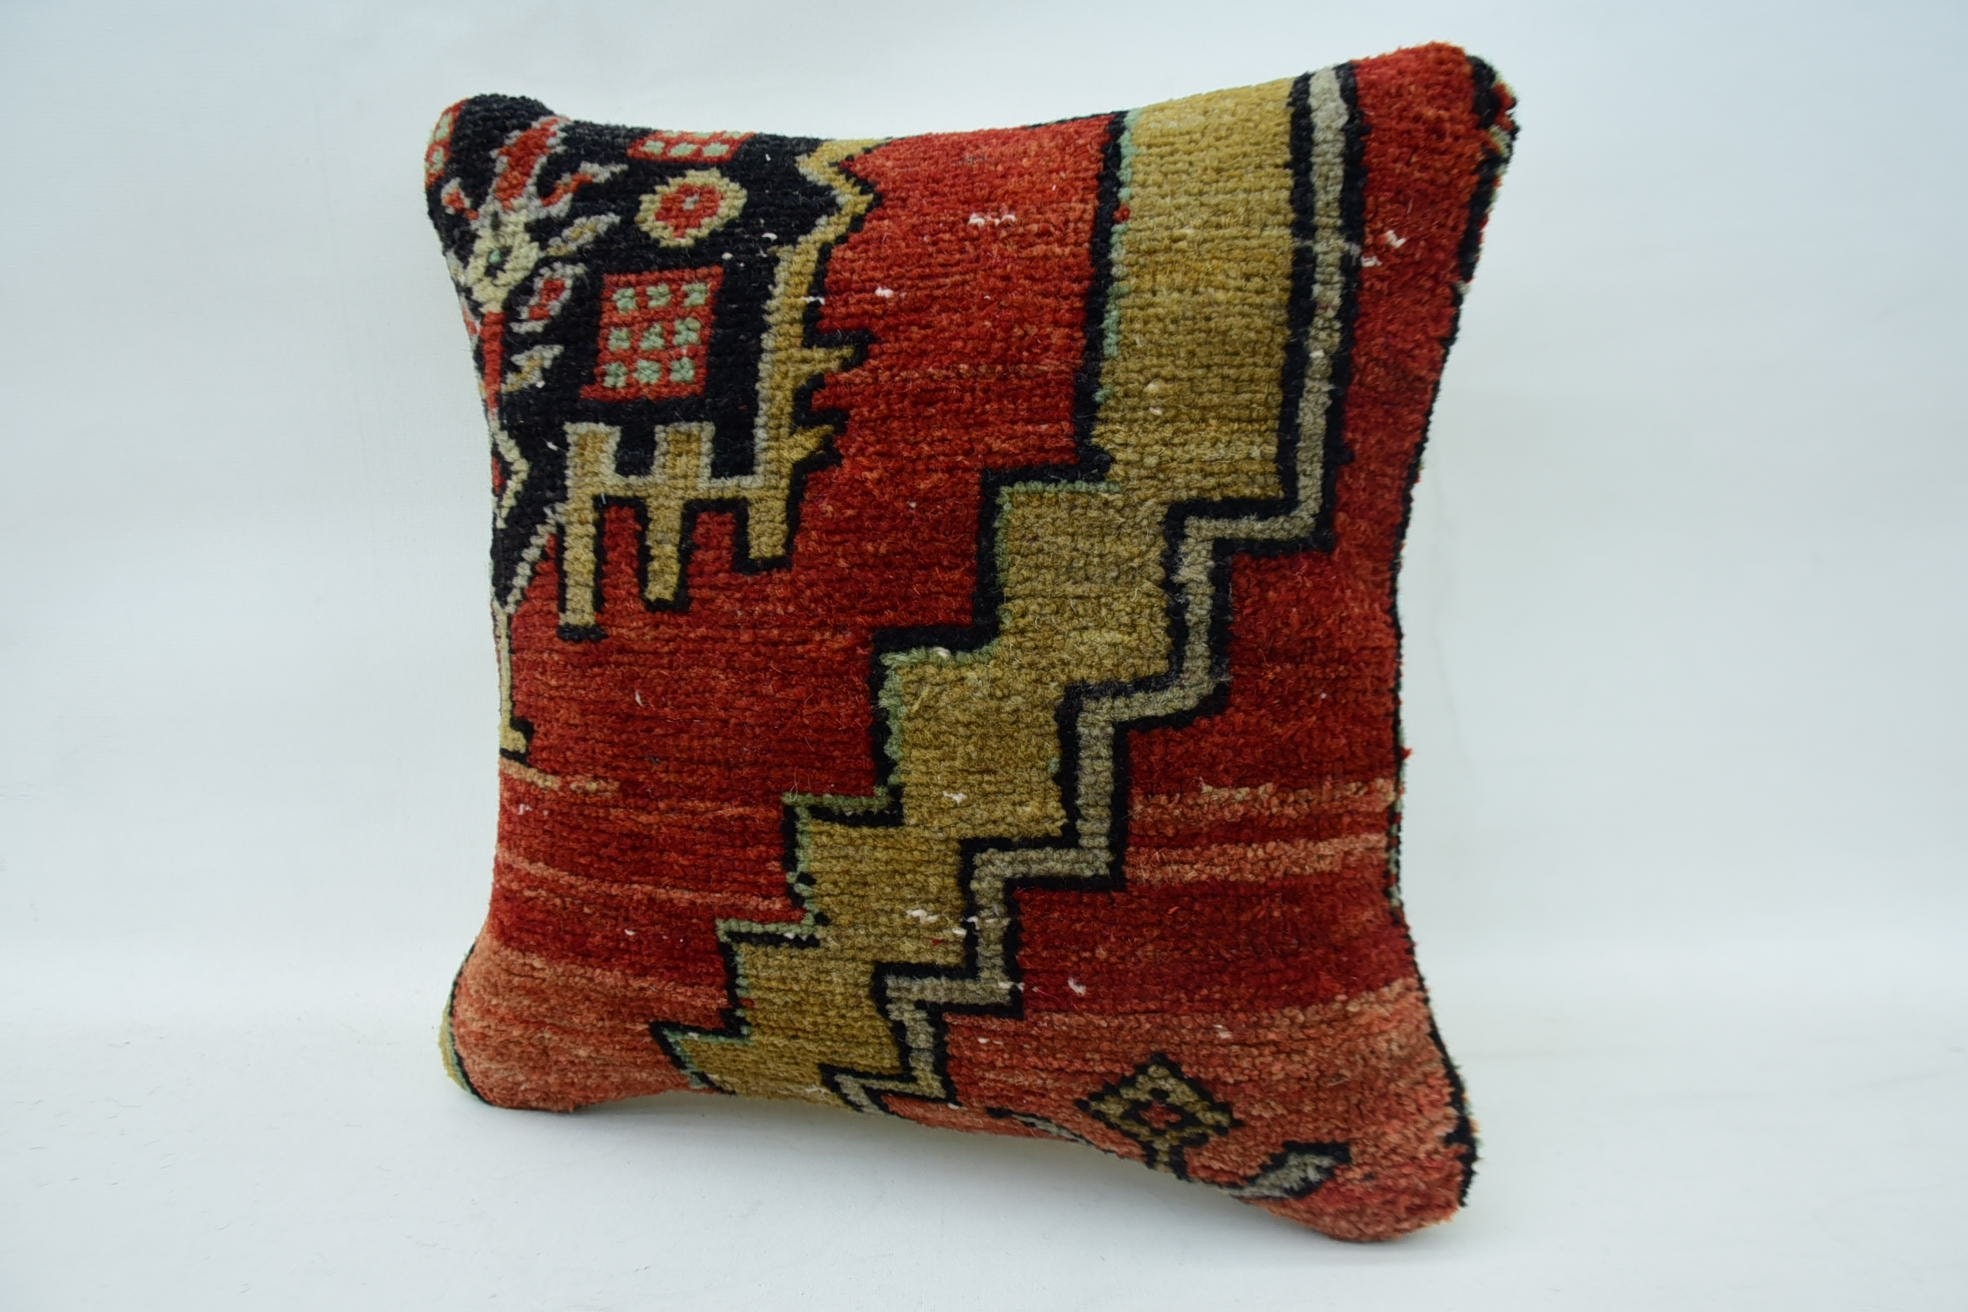 Boho Pillow, 14"x14" Red Cushion, Handmade Kilim Cushion, Antique Pillows, Farmhouse Pillow Cover, Bohemian Cushion Cushion Cover